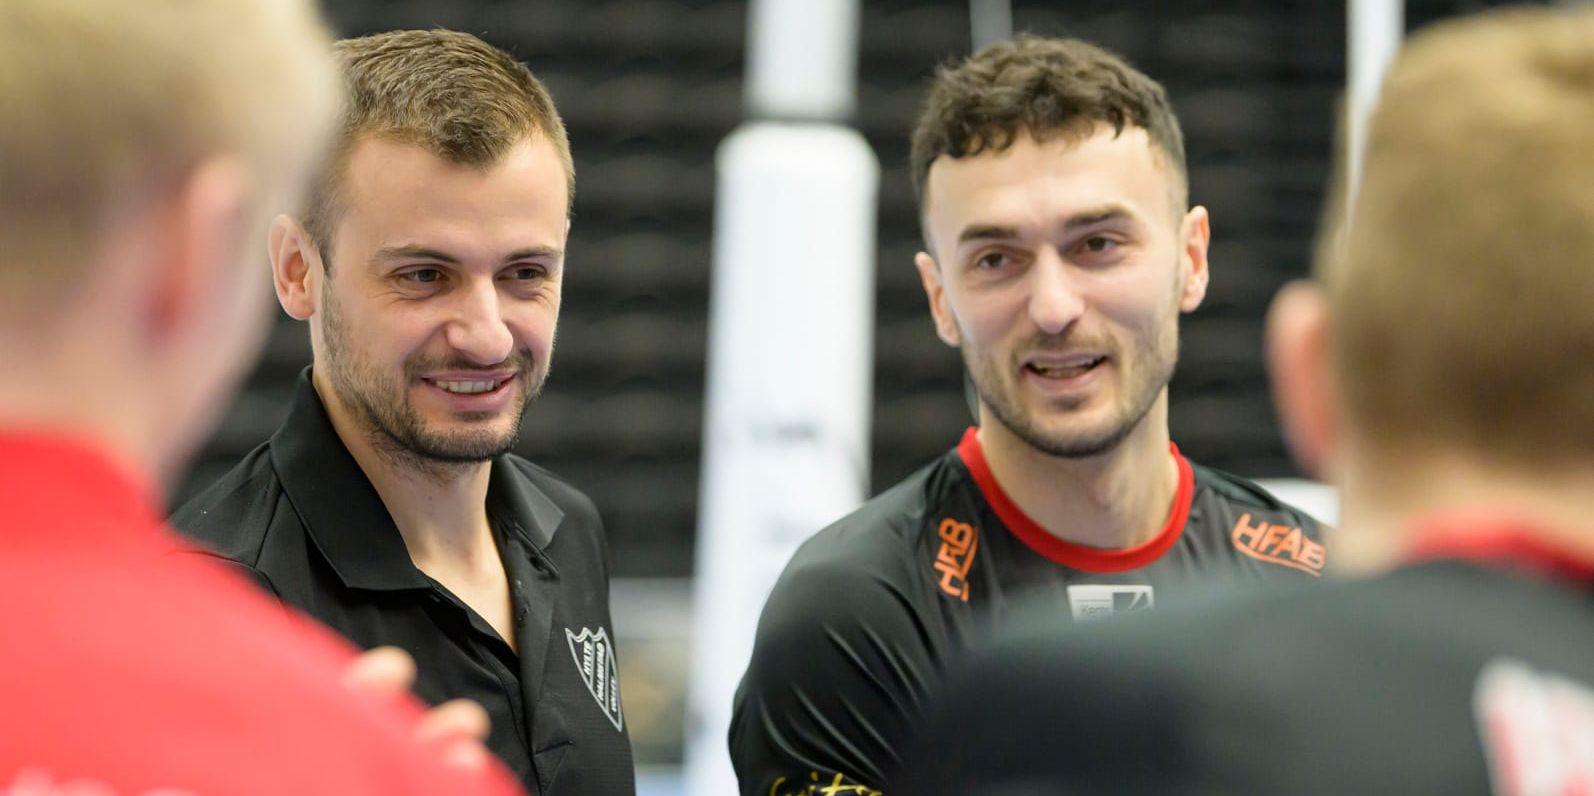 Hylte/Halmstads Almir Ljutovac och Dardan Lushtaku var nominerade till årets coach och årets spelare, men fick inga priser.